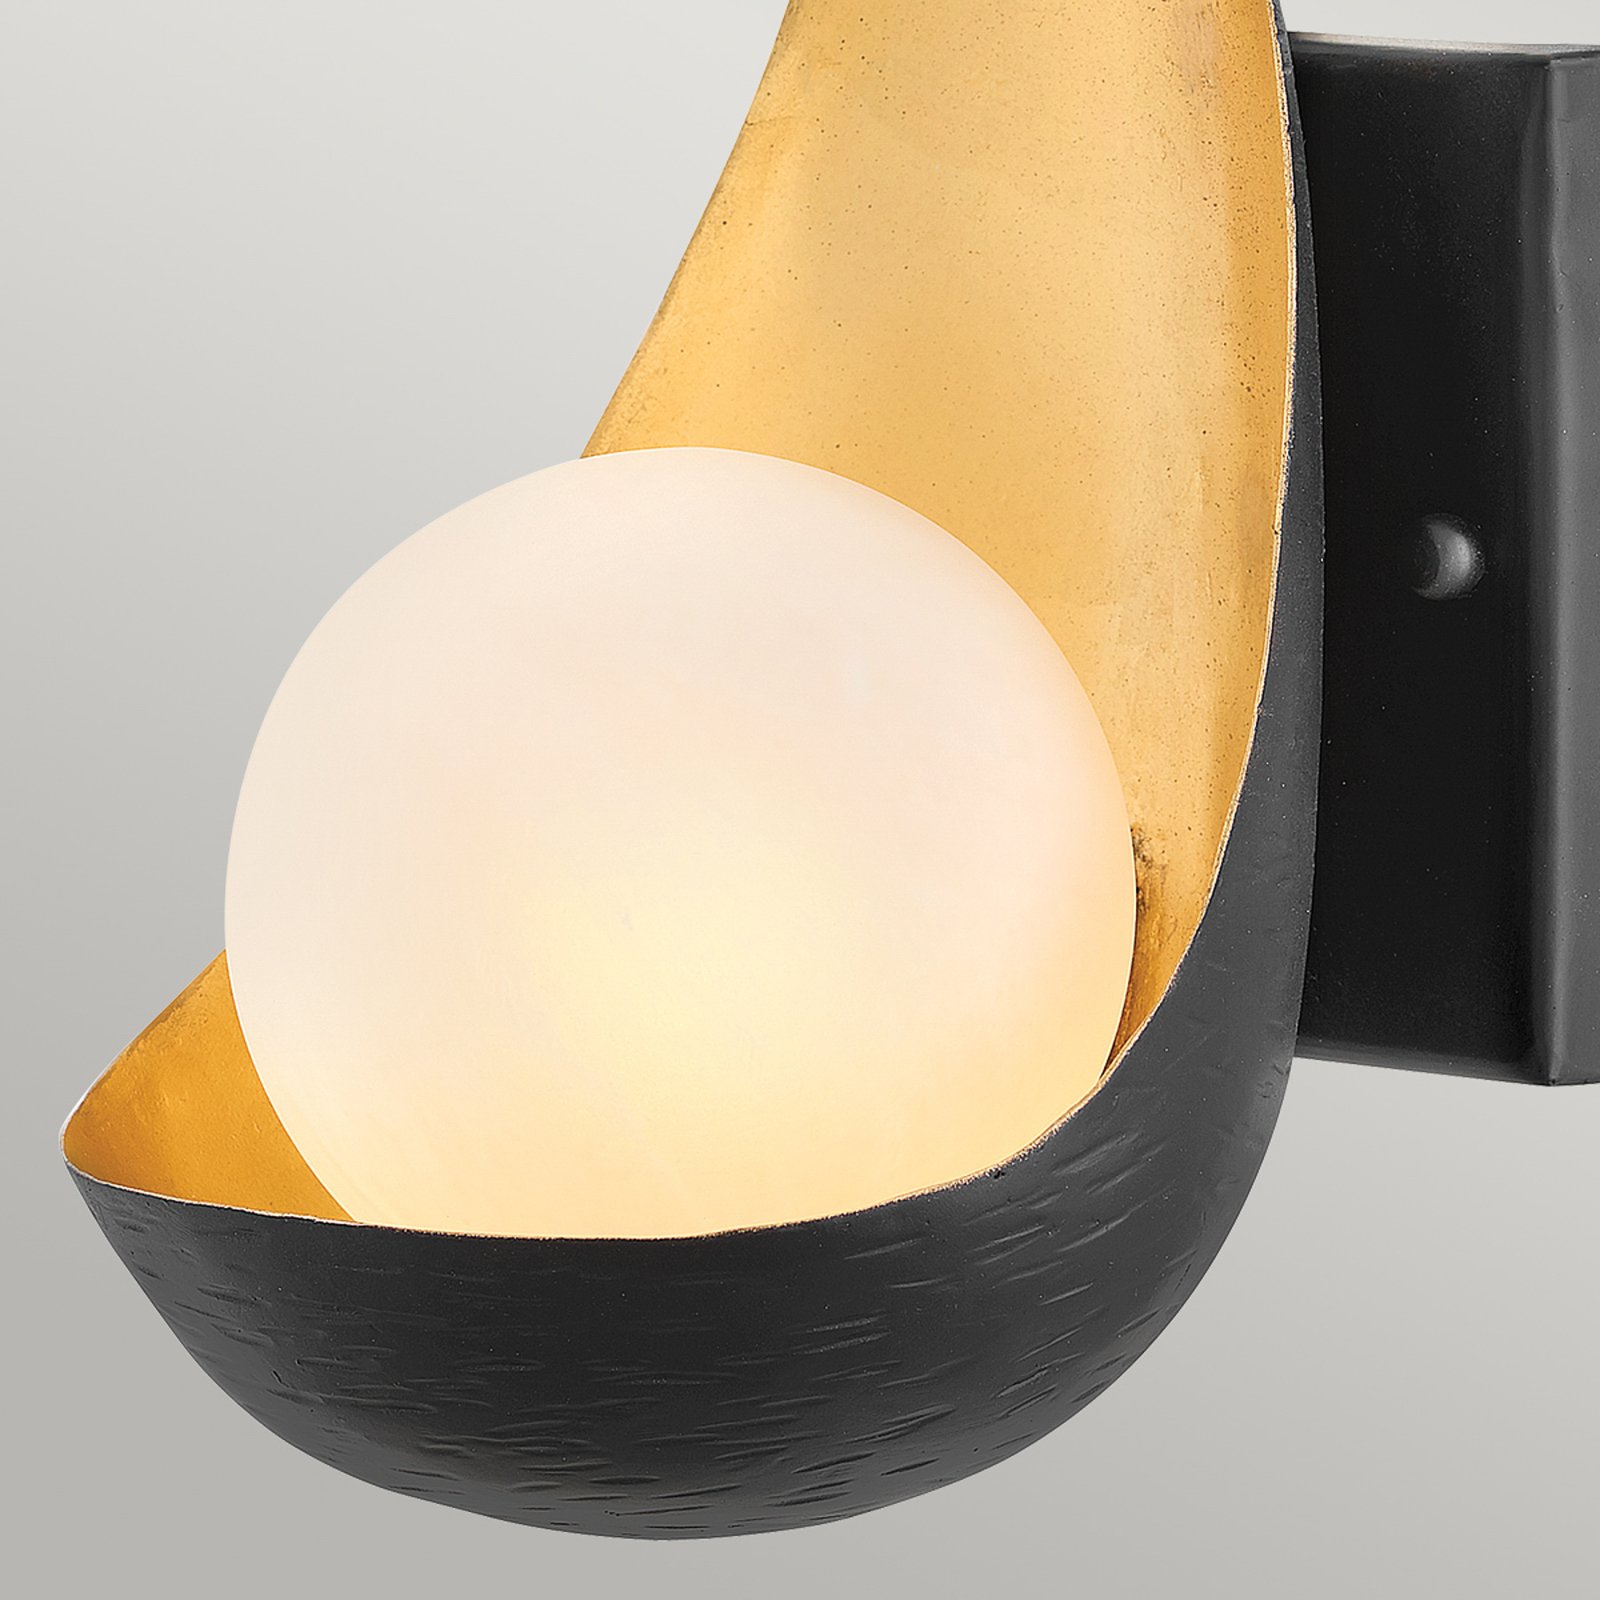 Ren wall light, 1-bulb, black/gold